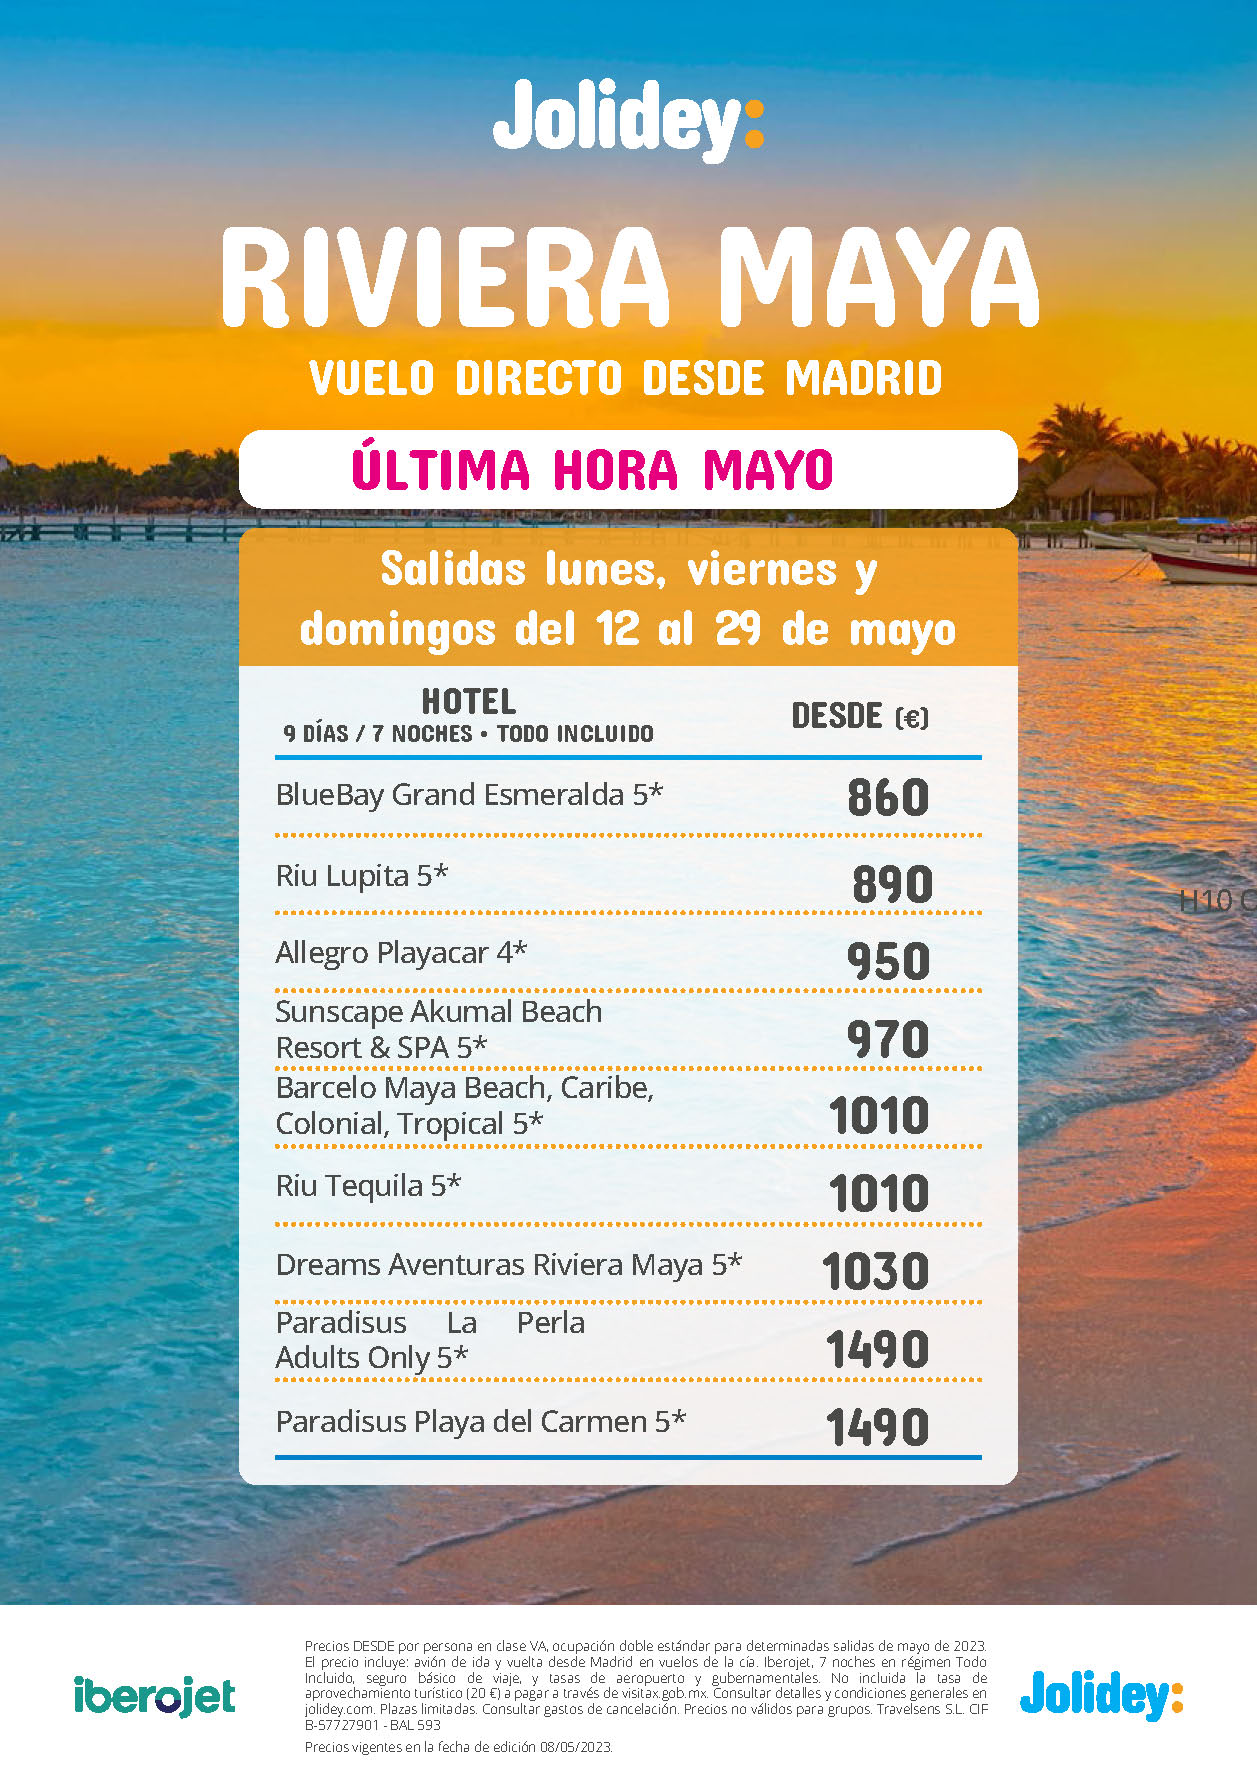 Oferta Jolidey Ultima Hora Mayo 2023 Estancia en Riviera Maya Mexico 9 dias Todo Incluido salida en vuelo directo desde Madrid